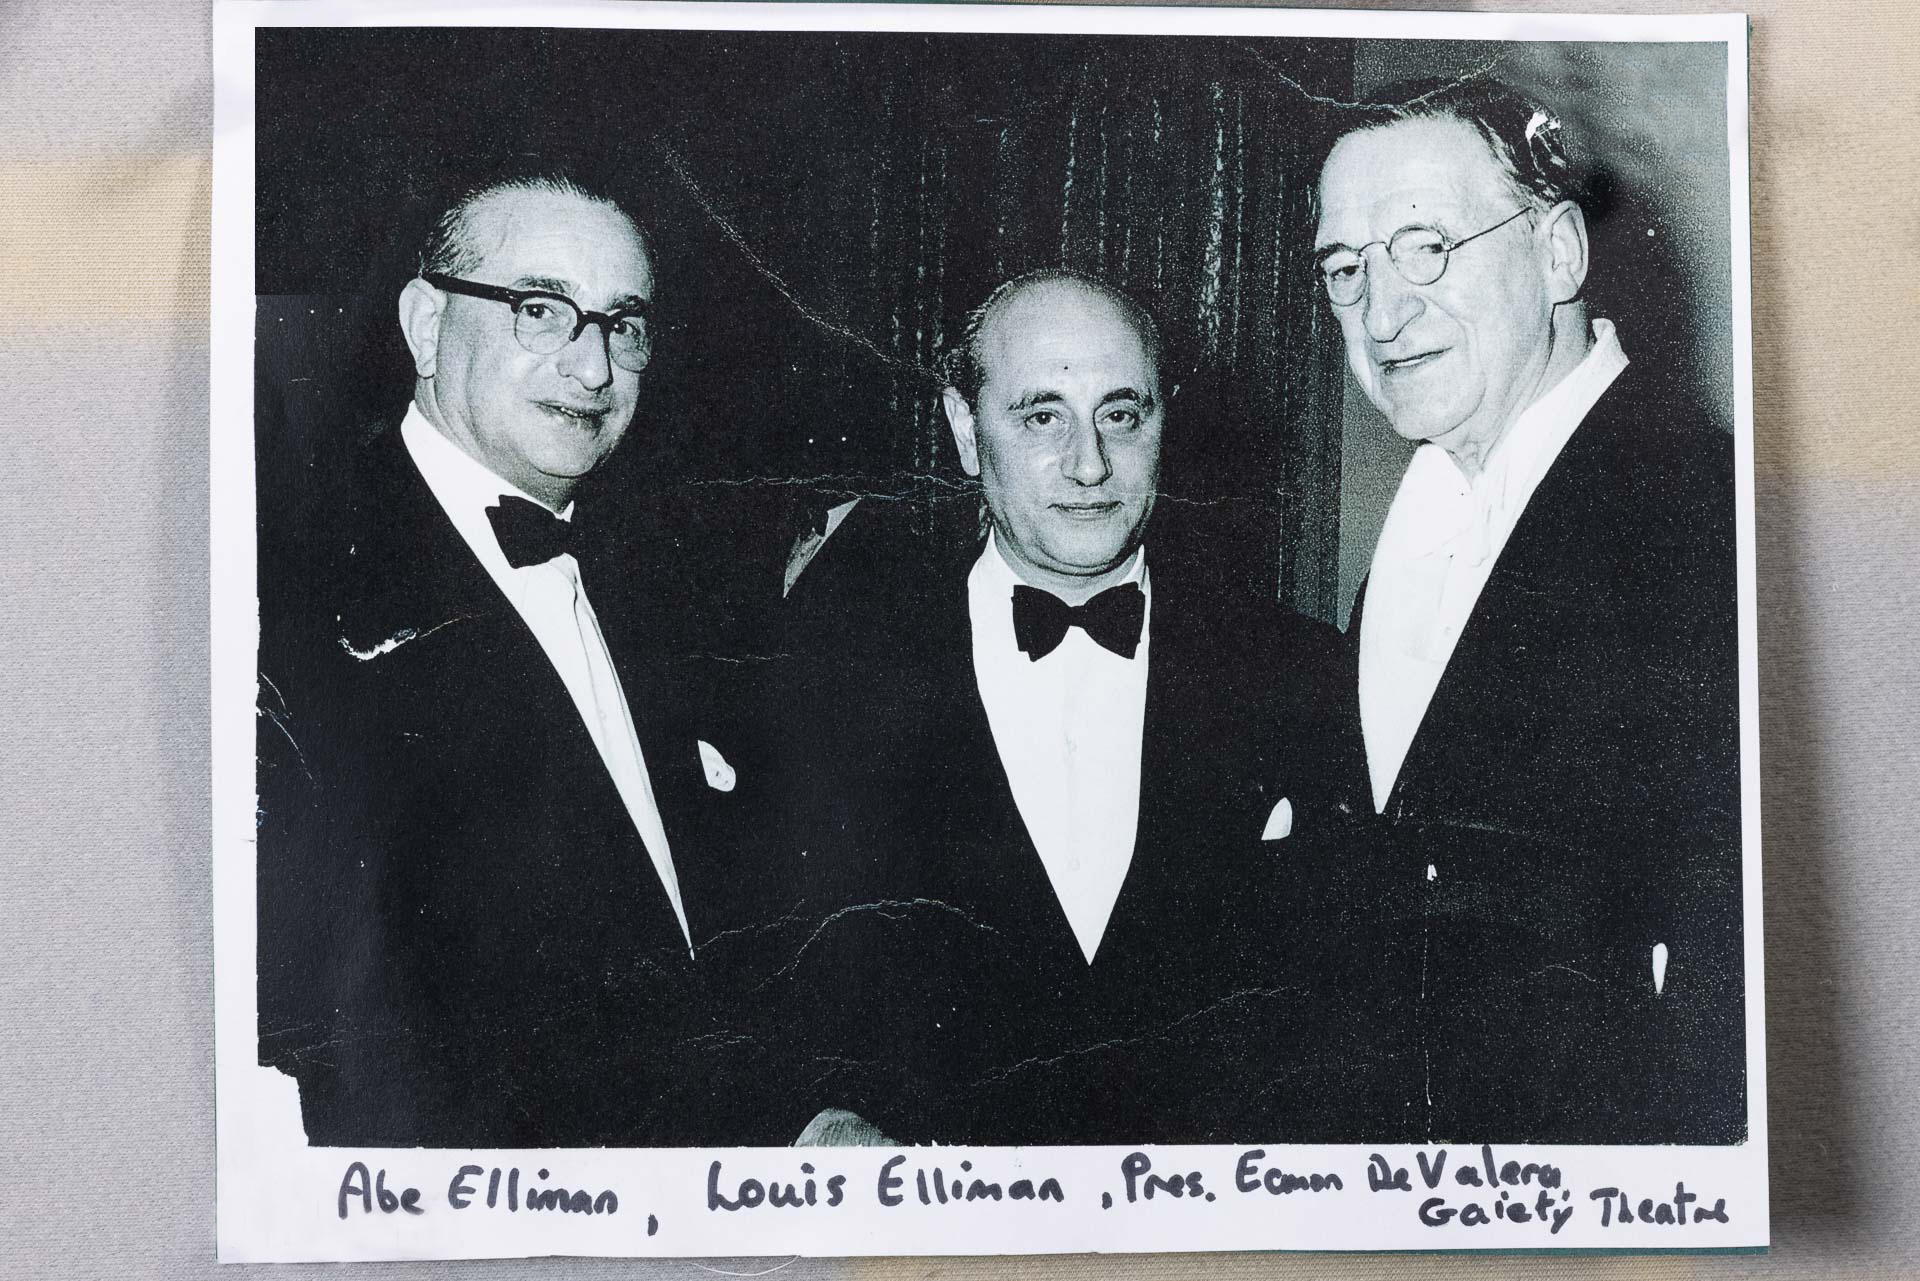 The Ellimans with De Valera